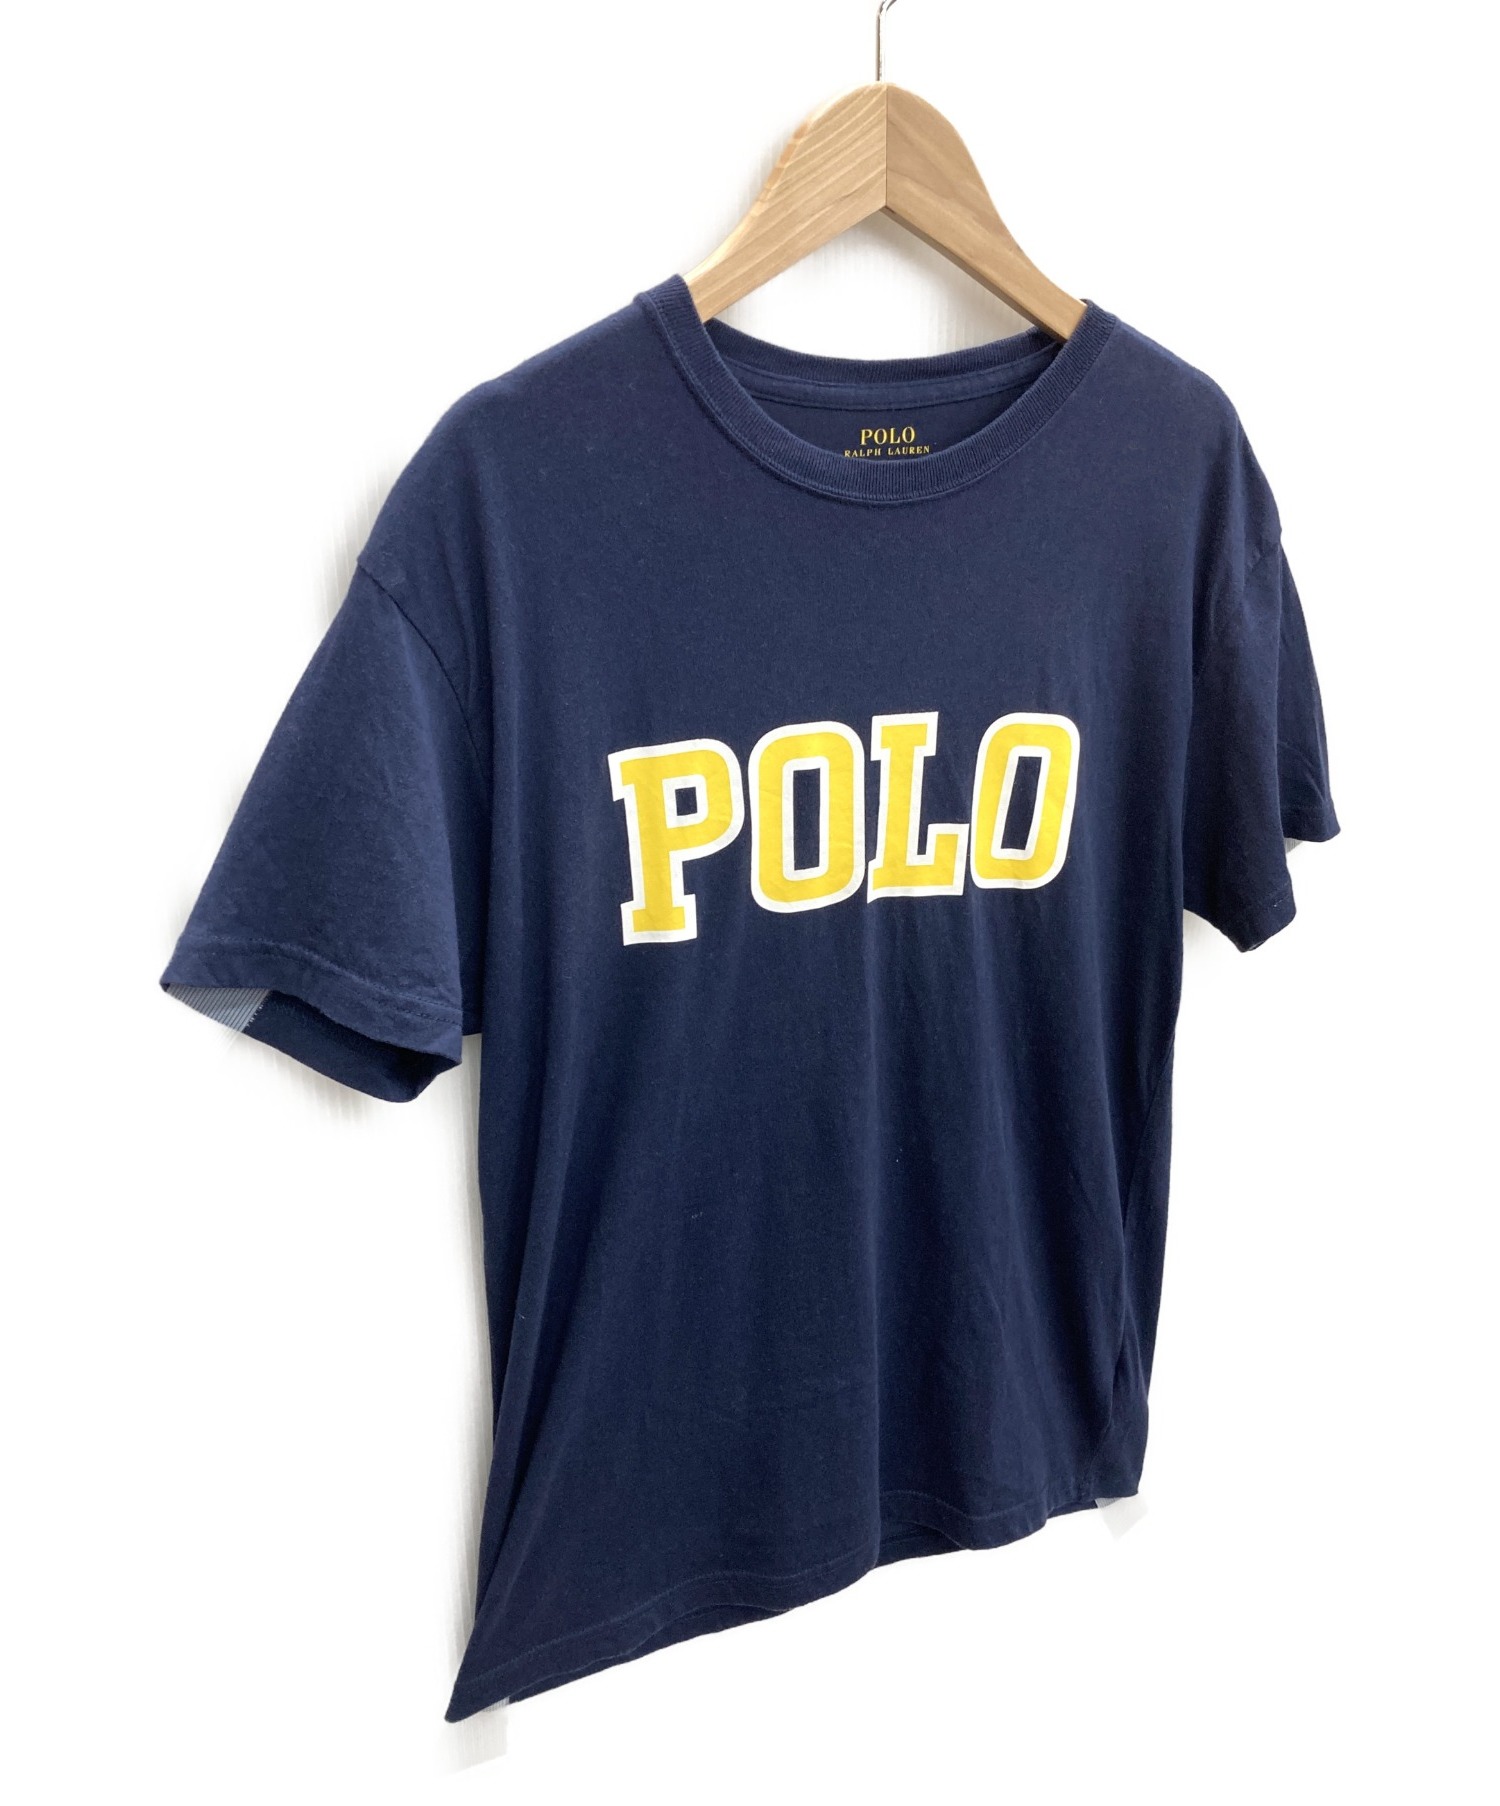 POLO RALPH LAUREN (ポロ・ラルフローレン) Tシャツ ネイビー サイズ:XS